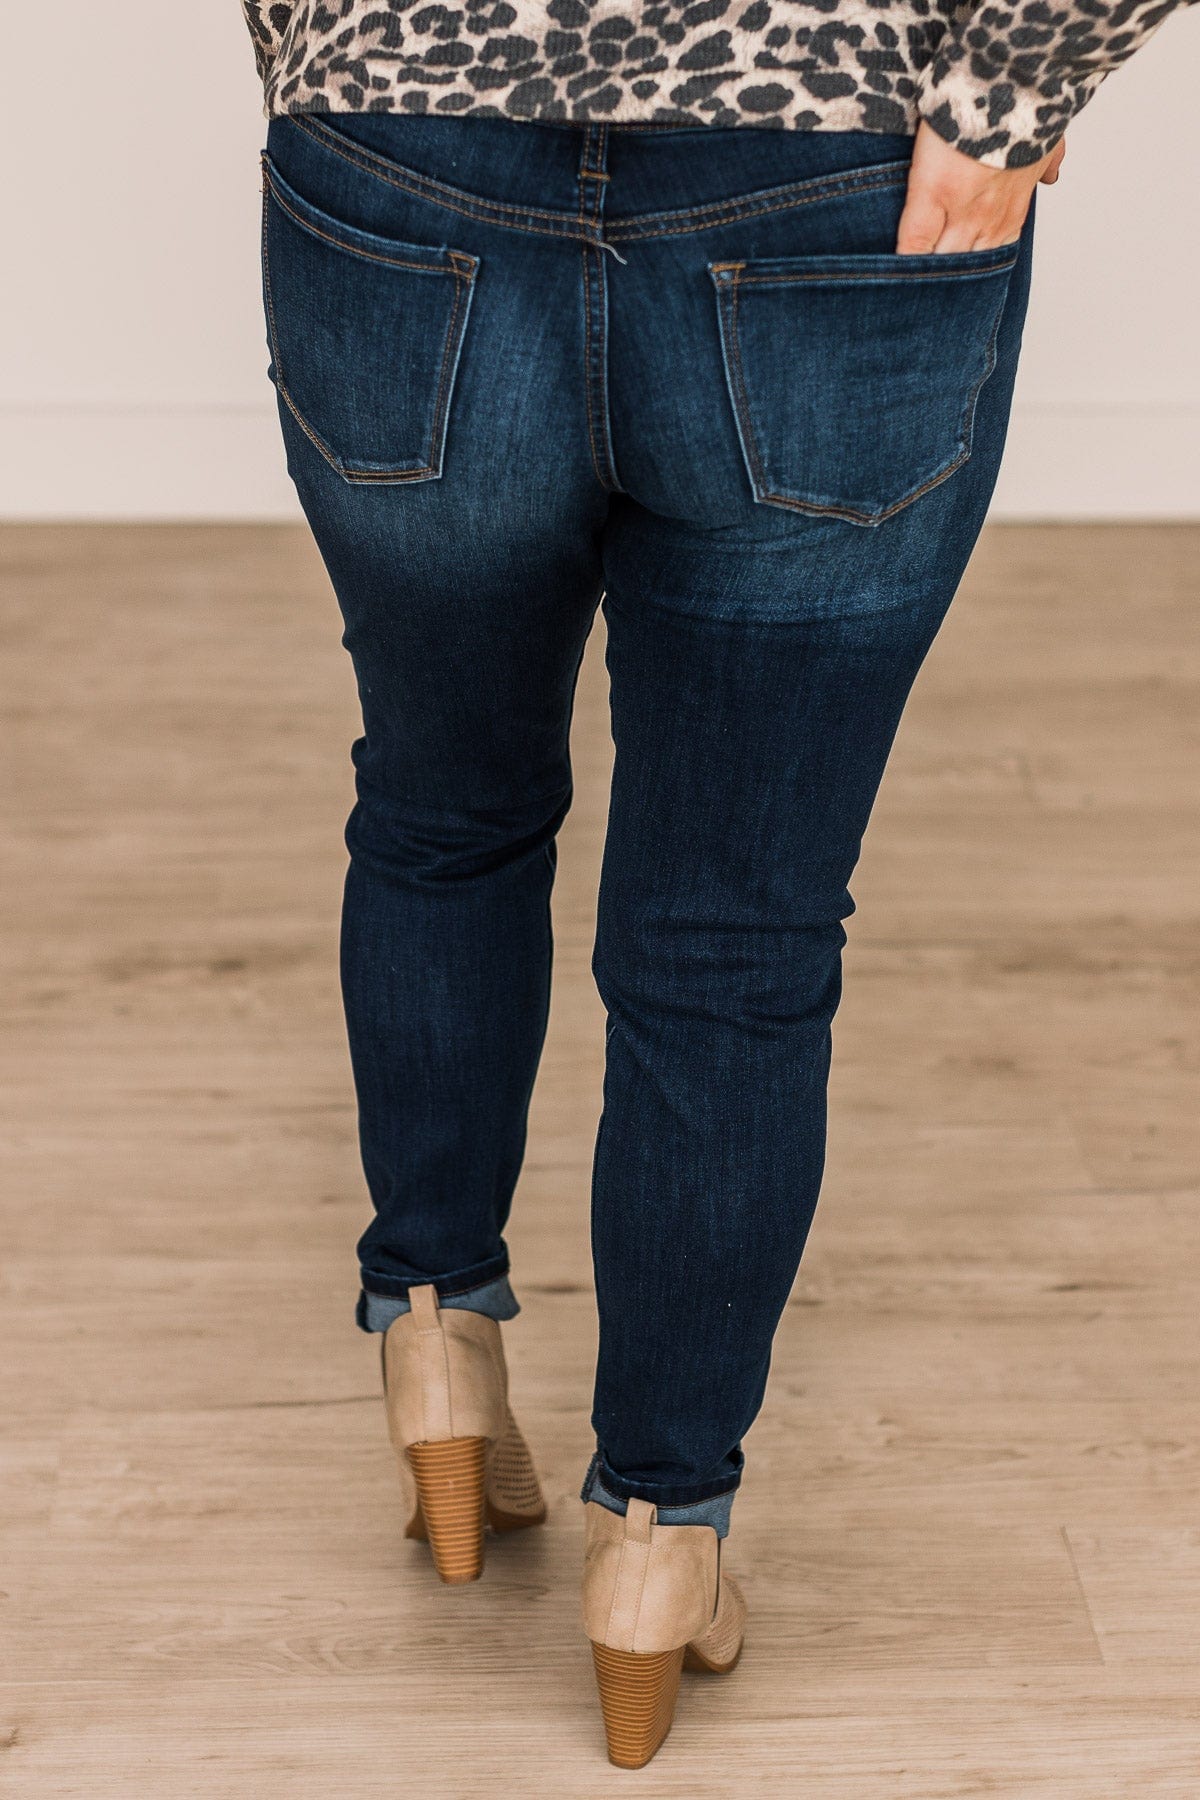 KanCan Super Skinny Jeans- Kensley Wash